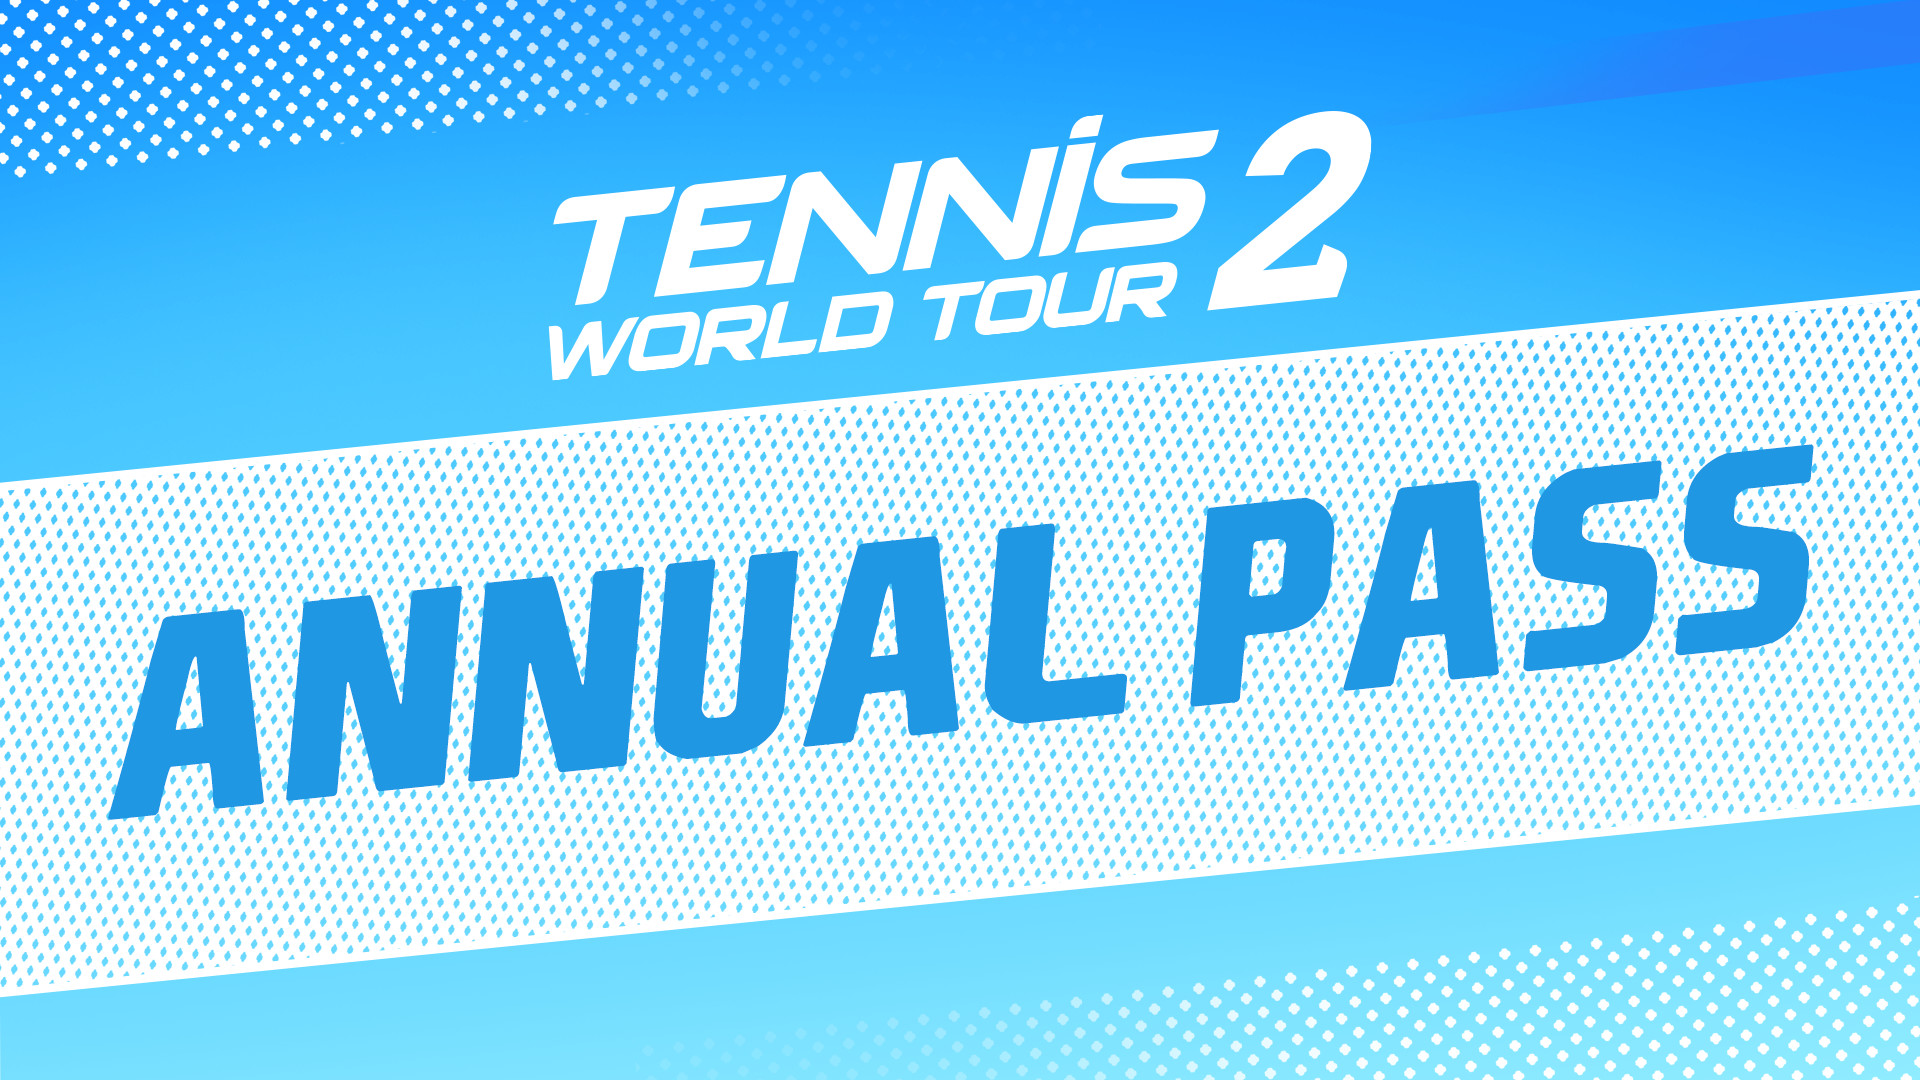 Tennis World Tour 2 - Annual Pass DLC Steam CD Key 7.23 usd